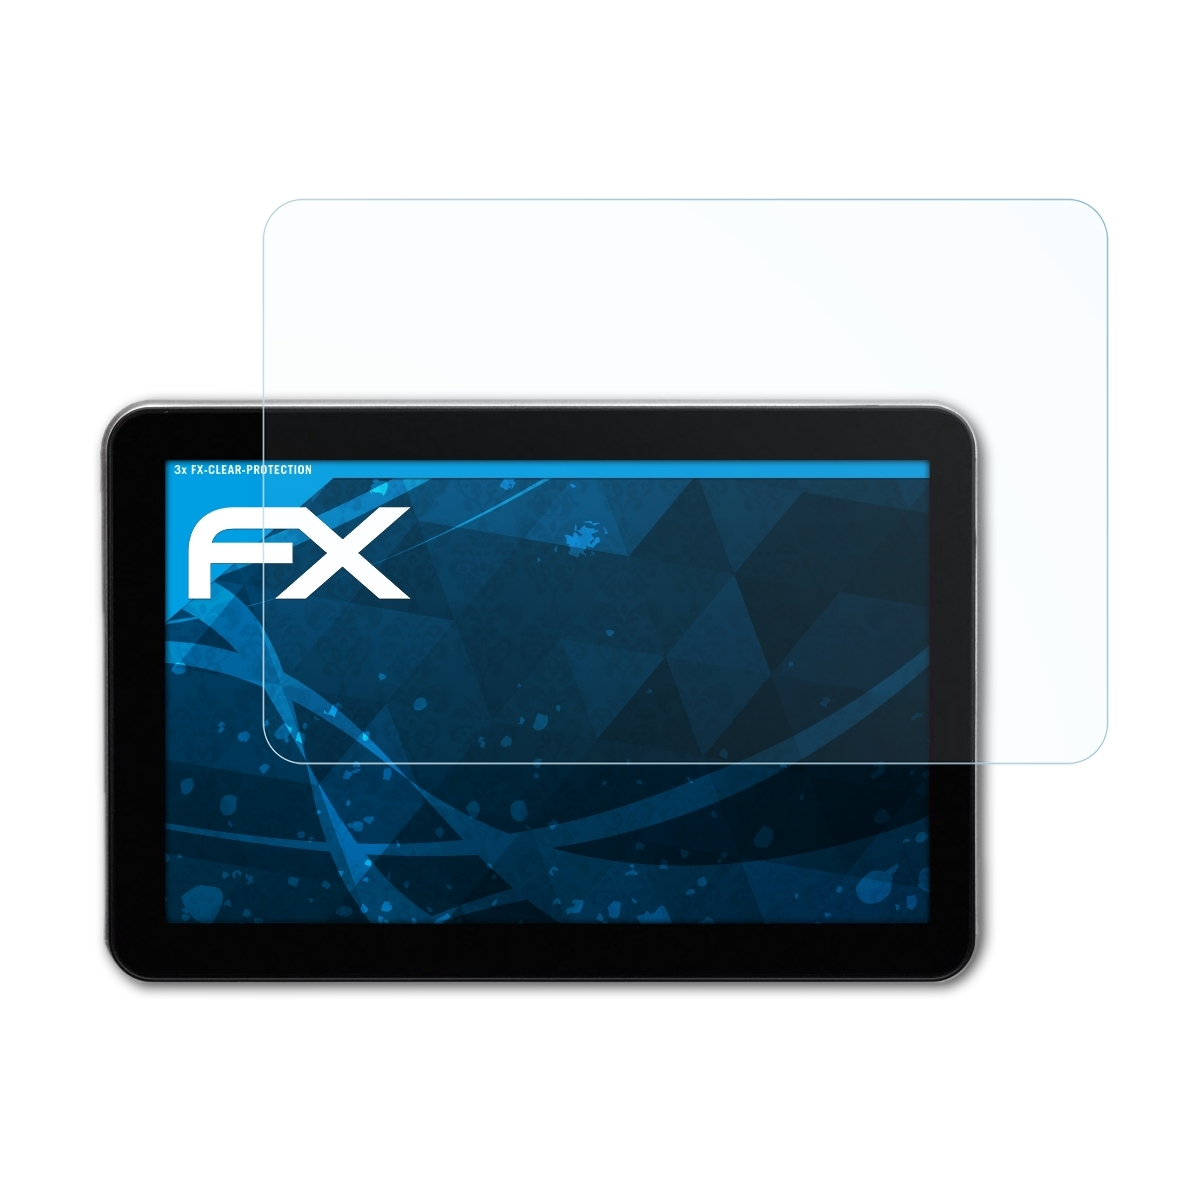 ATFOLIX 3x FX-Clear Displayschutz(für 53 CE LMU) EU Blaupunkt TravelPilot